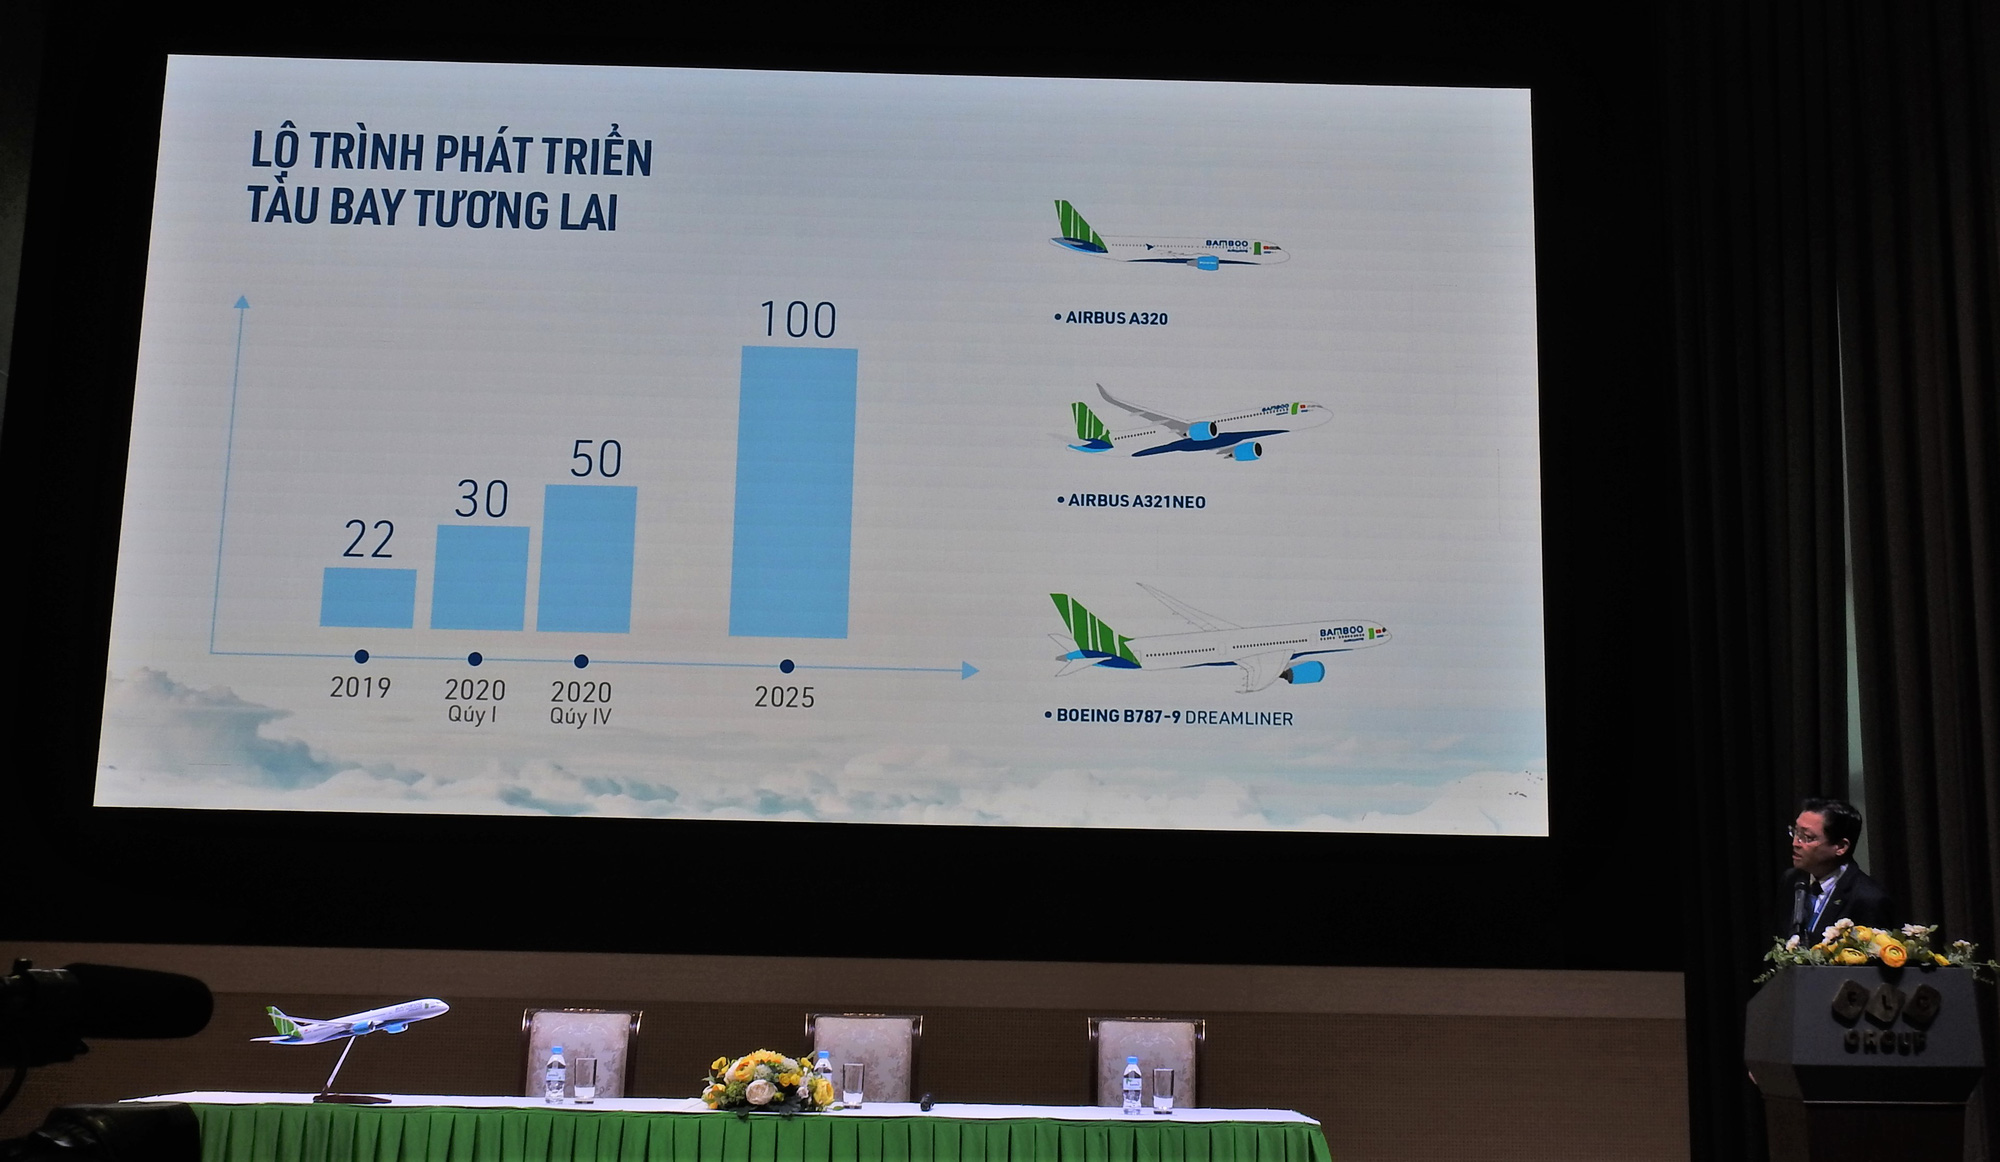 2dh Aviation | Nhu cầu khổng lồ từ khách nước ngoài và tầng lớp trung lưu, Việt Nam có thể cần tới 10 hãng hàng không